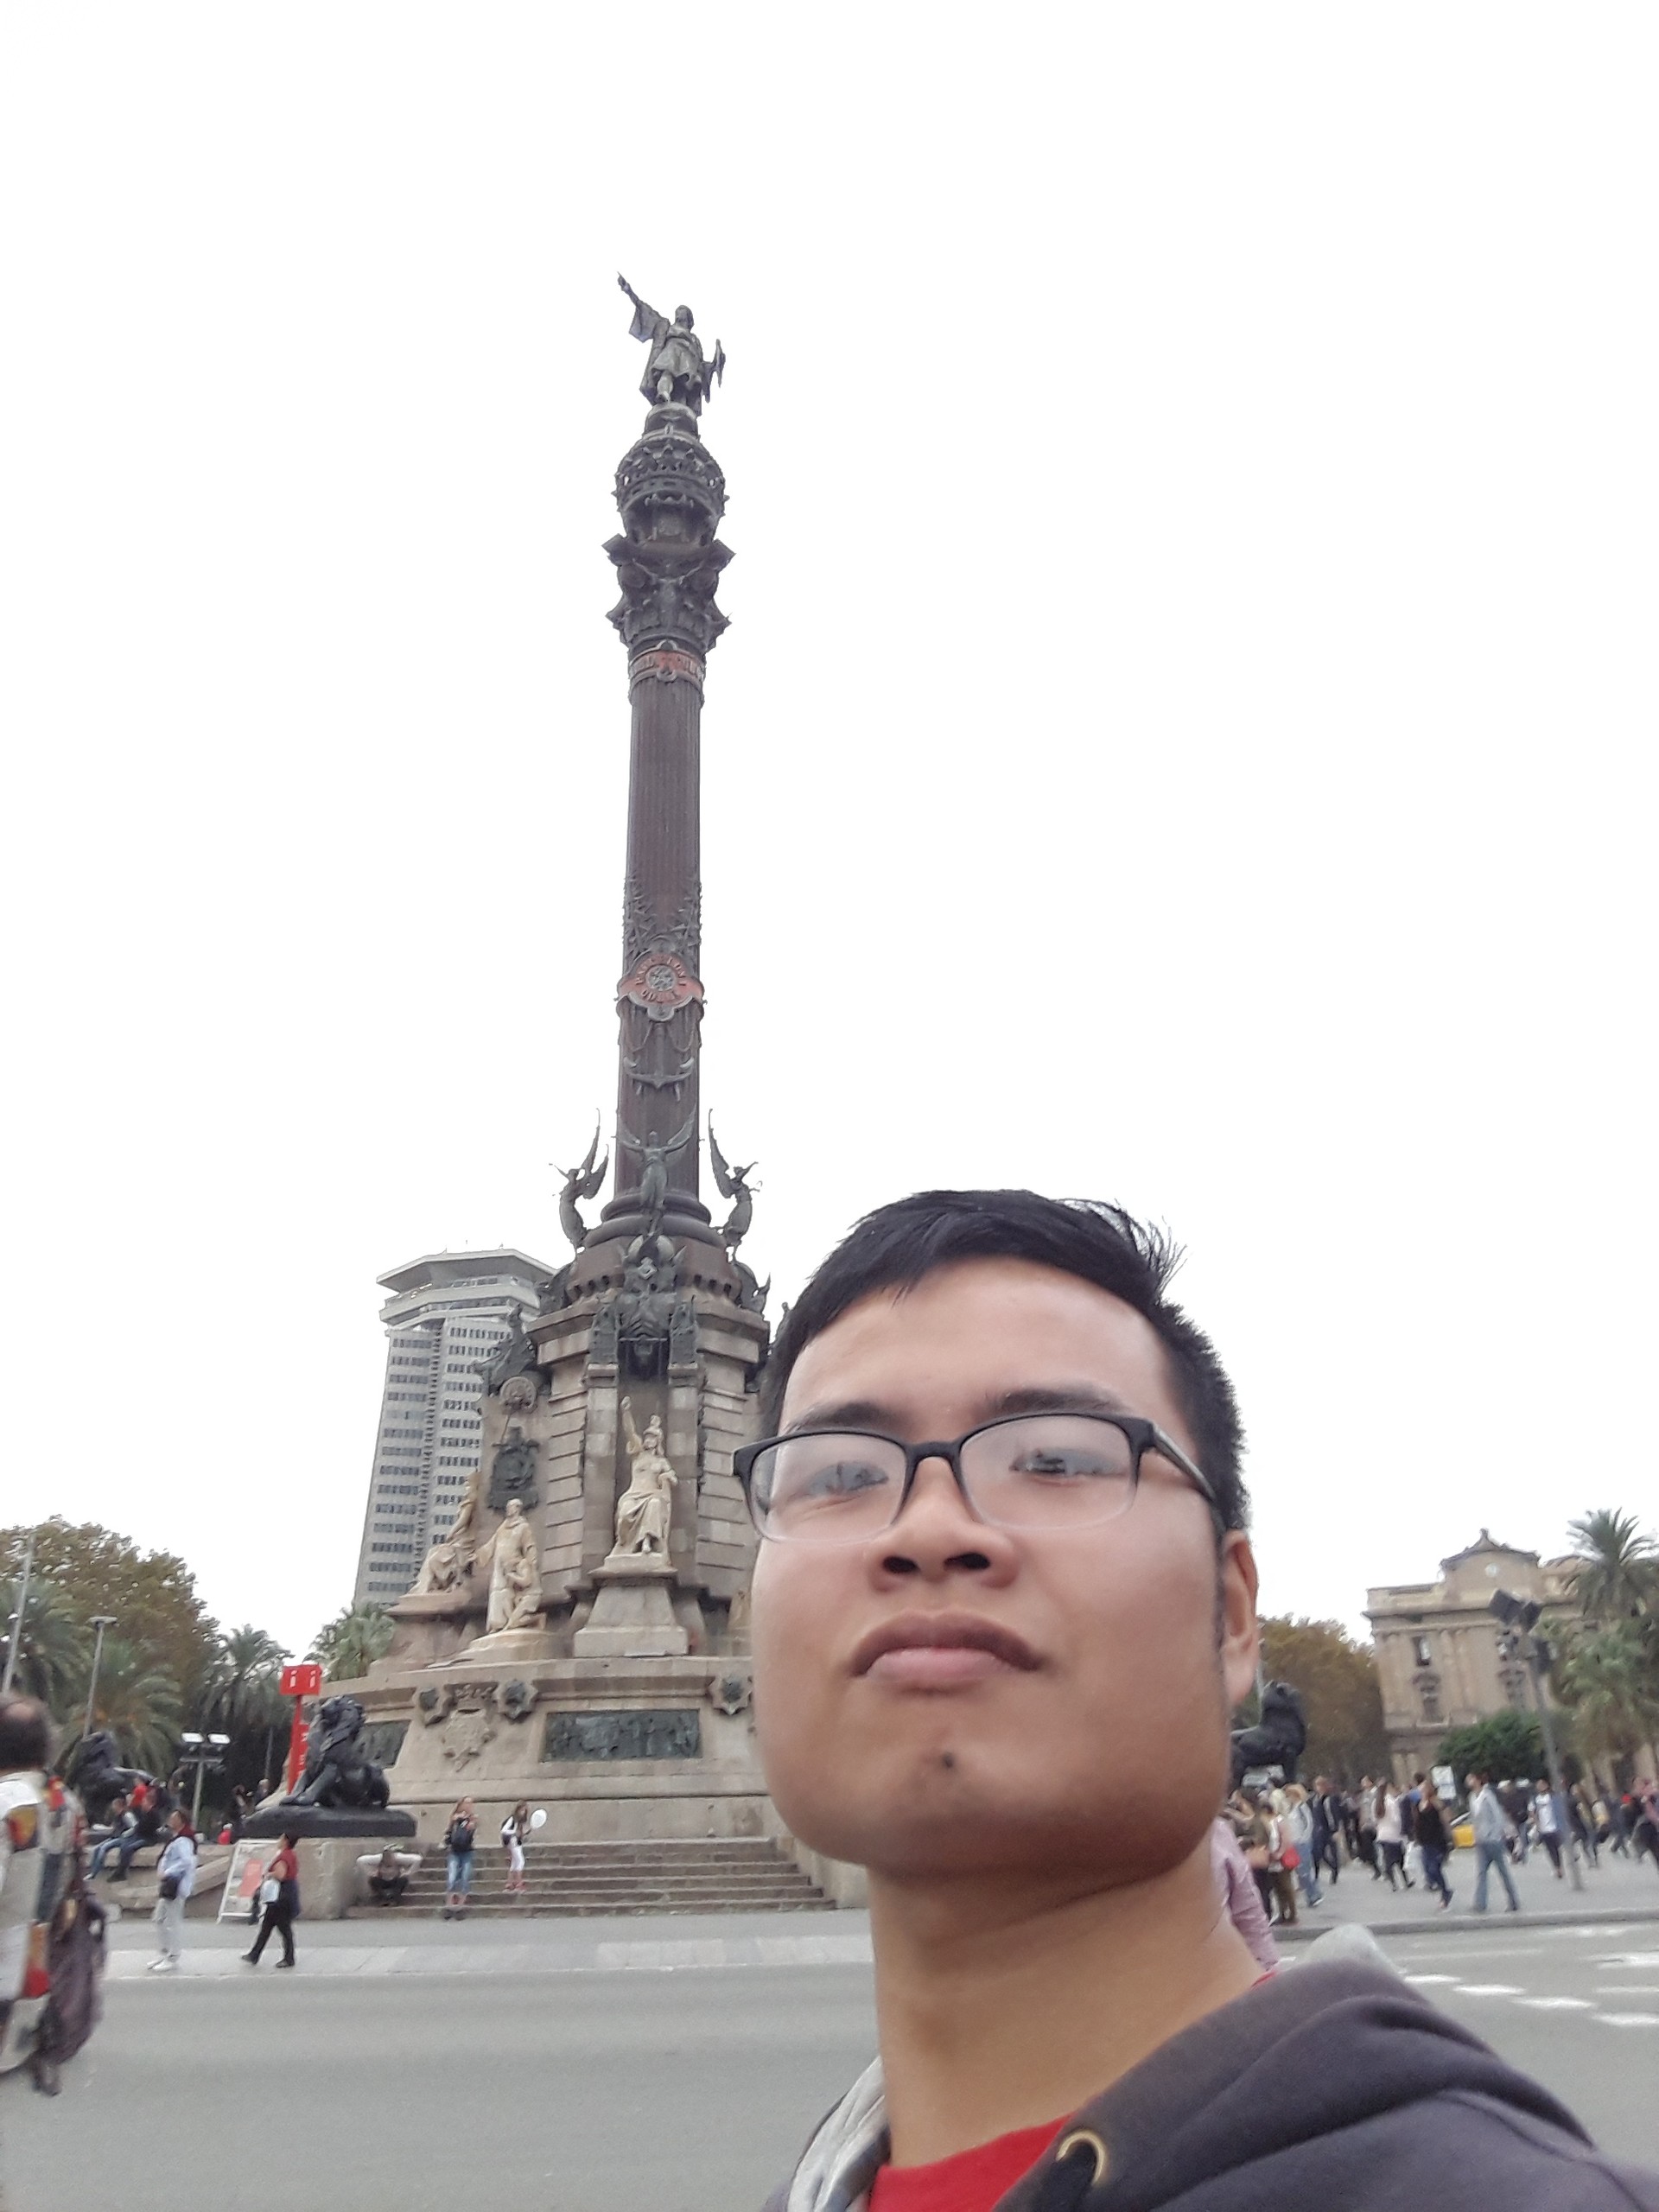 Monumento a Colón - Mi pequeña aportación y sensaciones